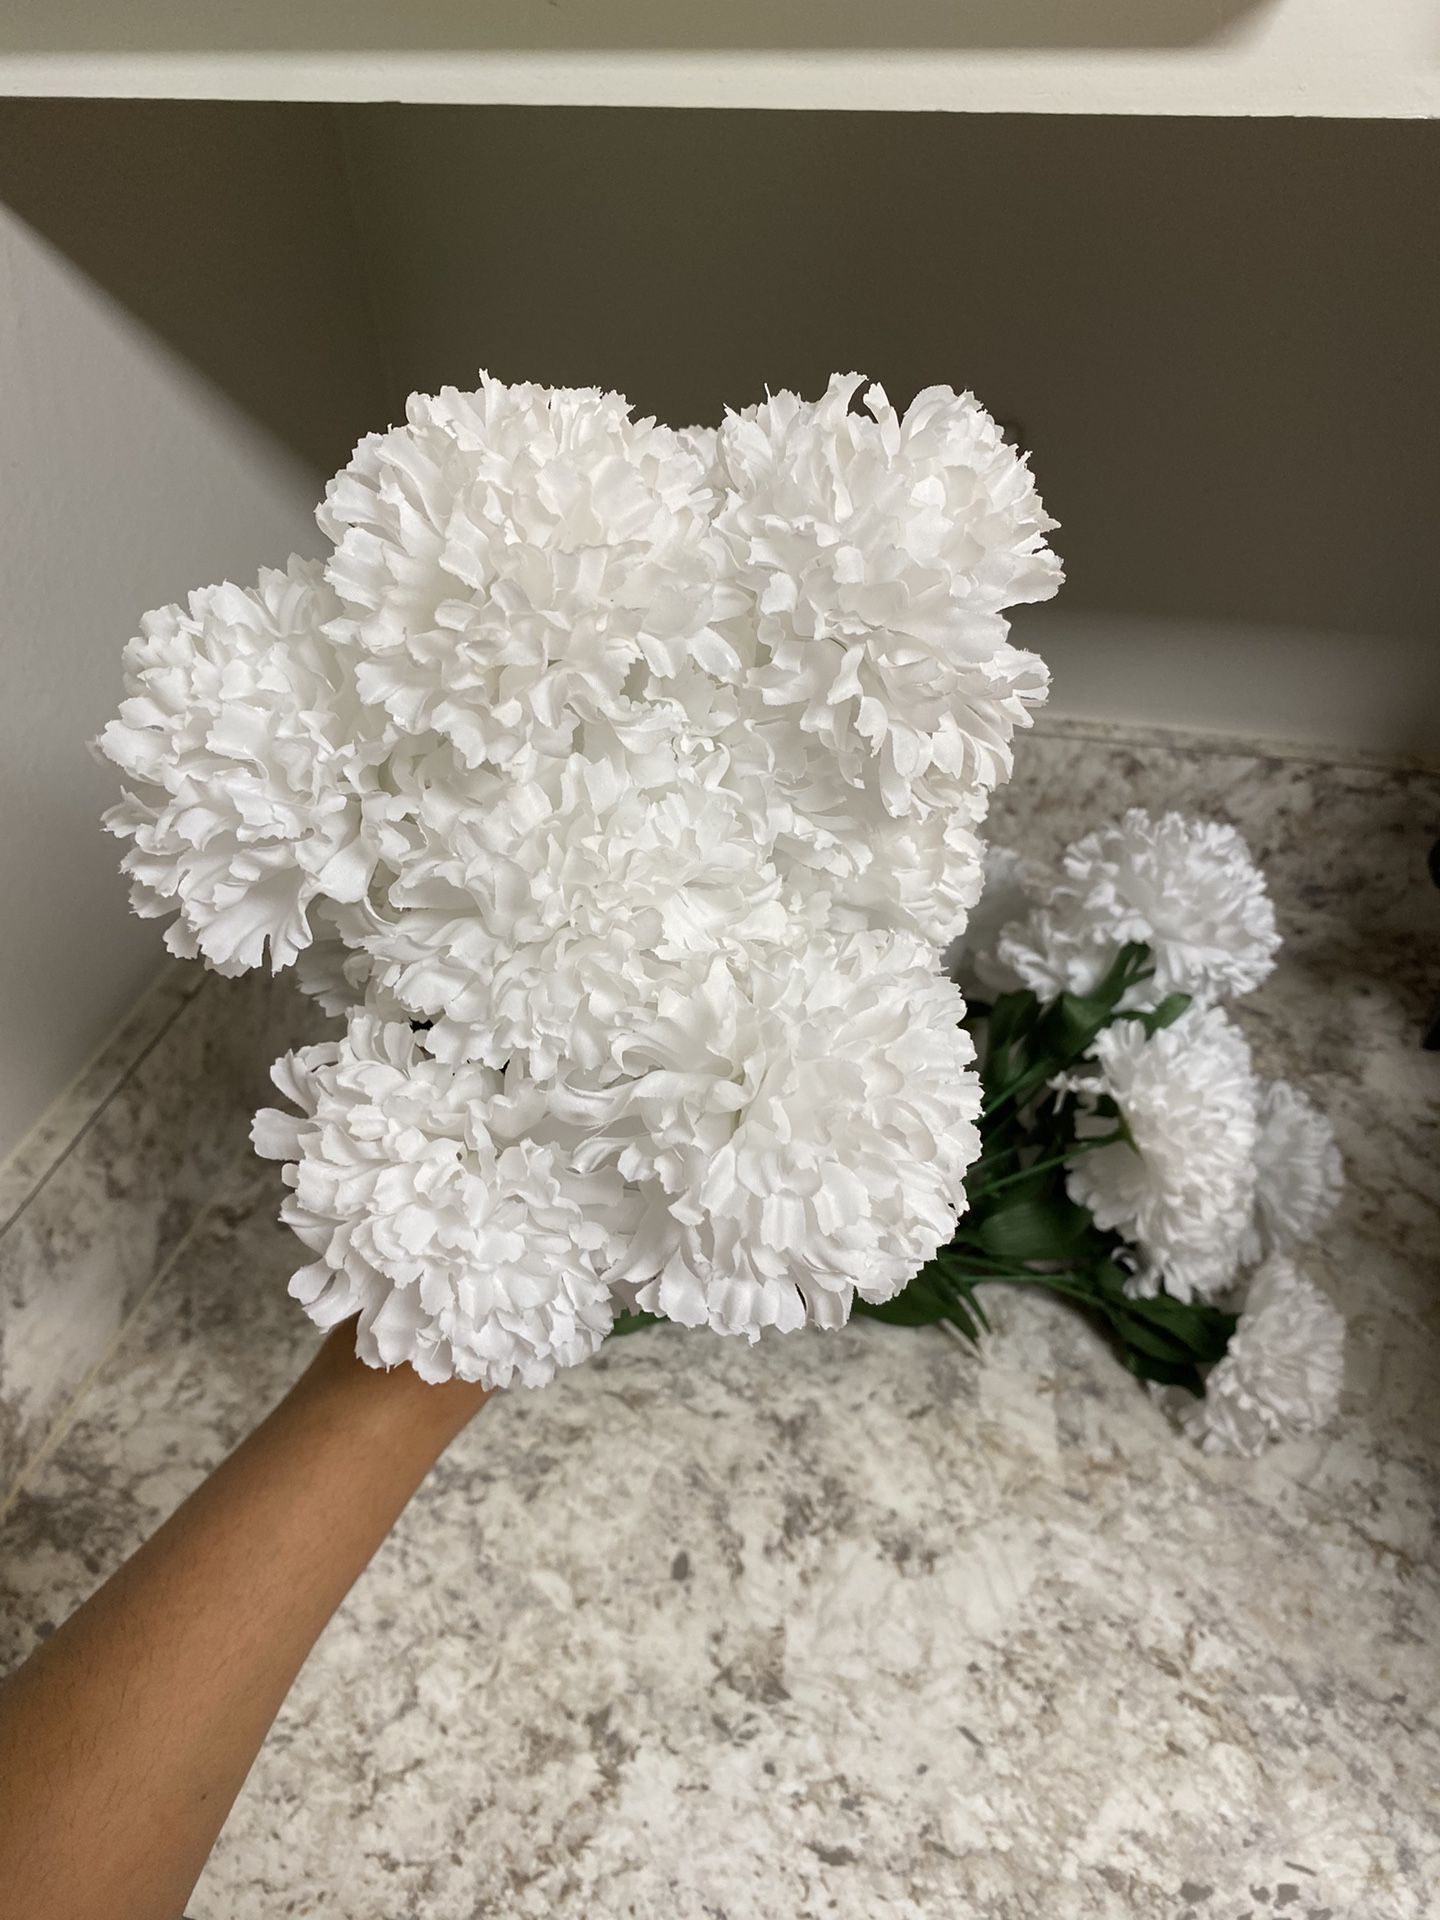  White Carnation Bundles